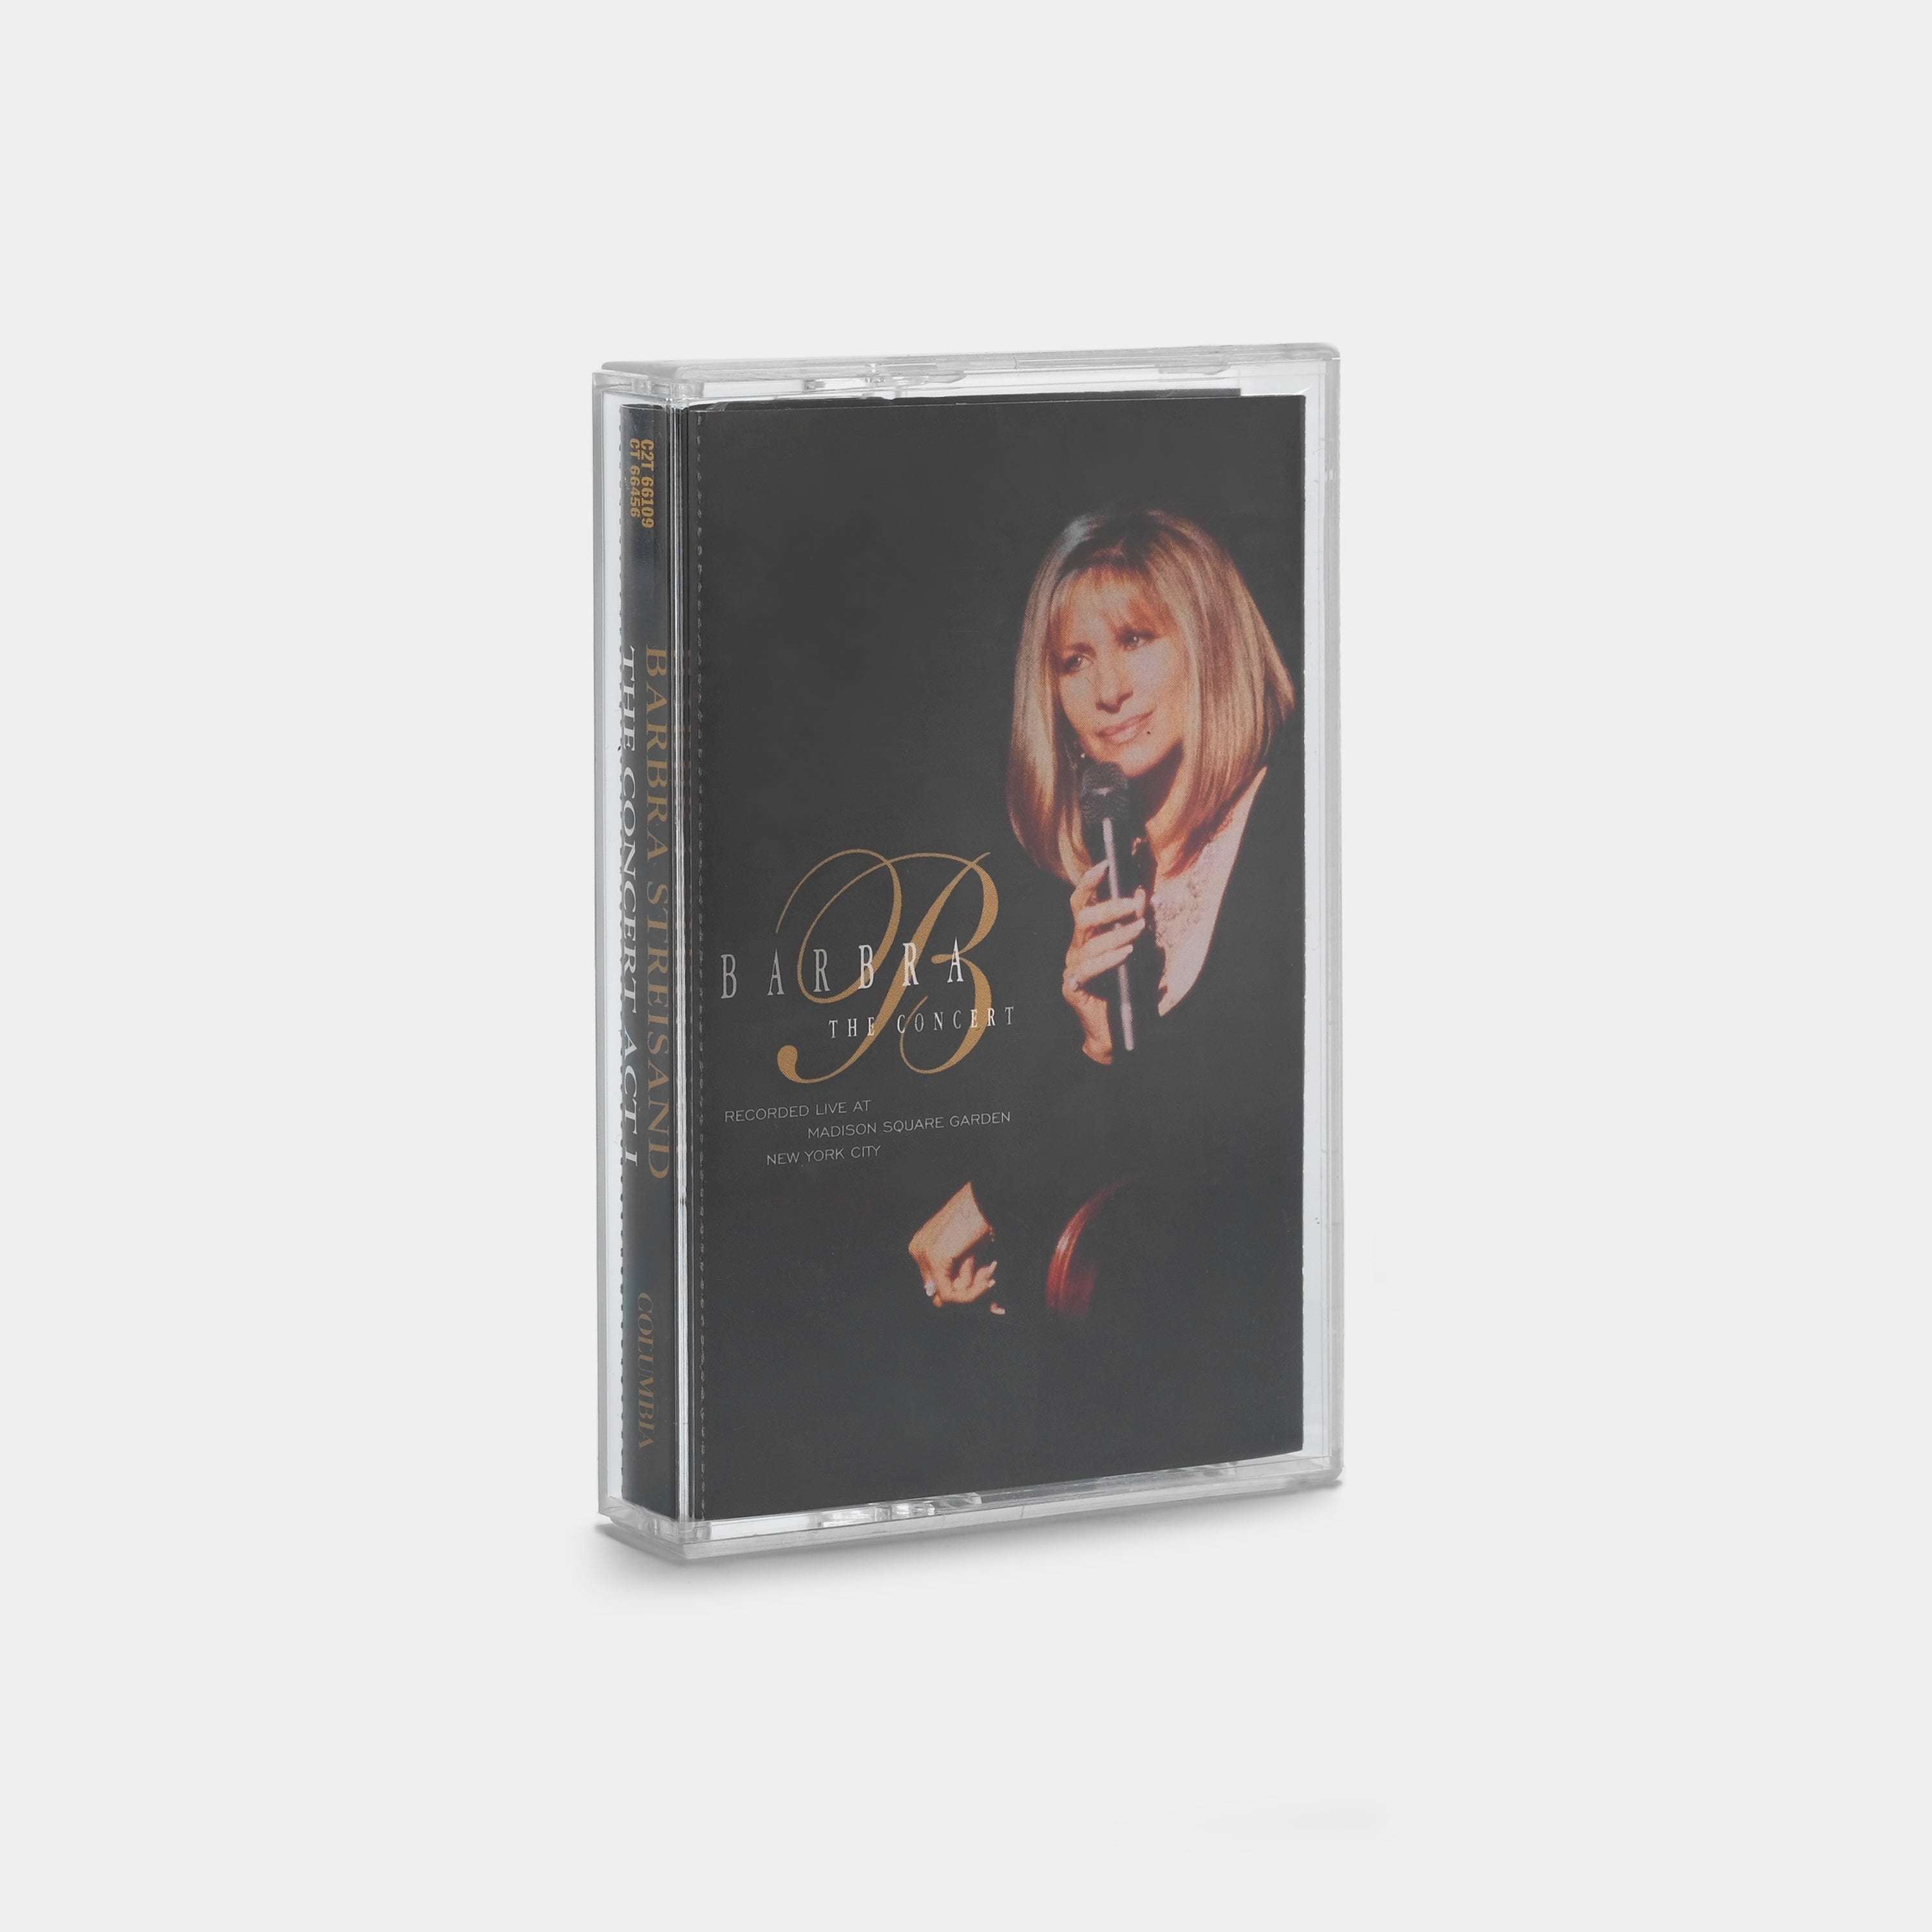 Barbra Streisand - The Concert Act I (Tape One) Cassette Tape